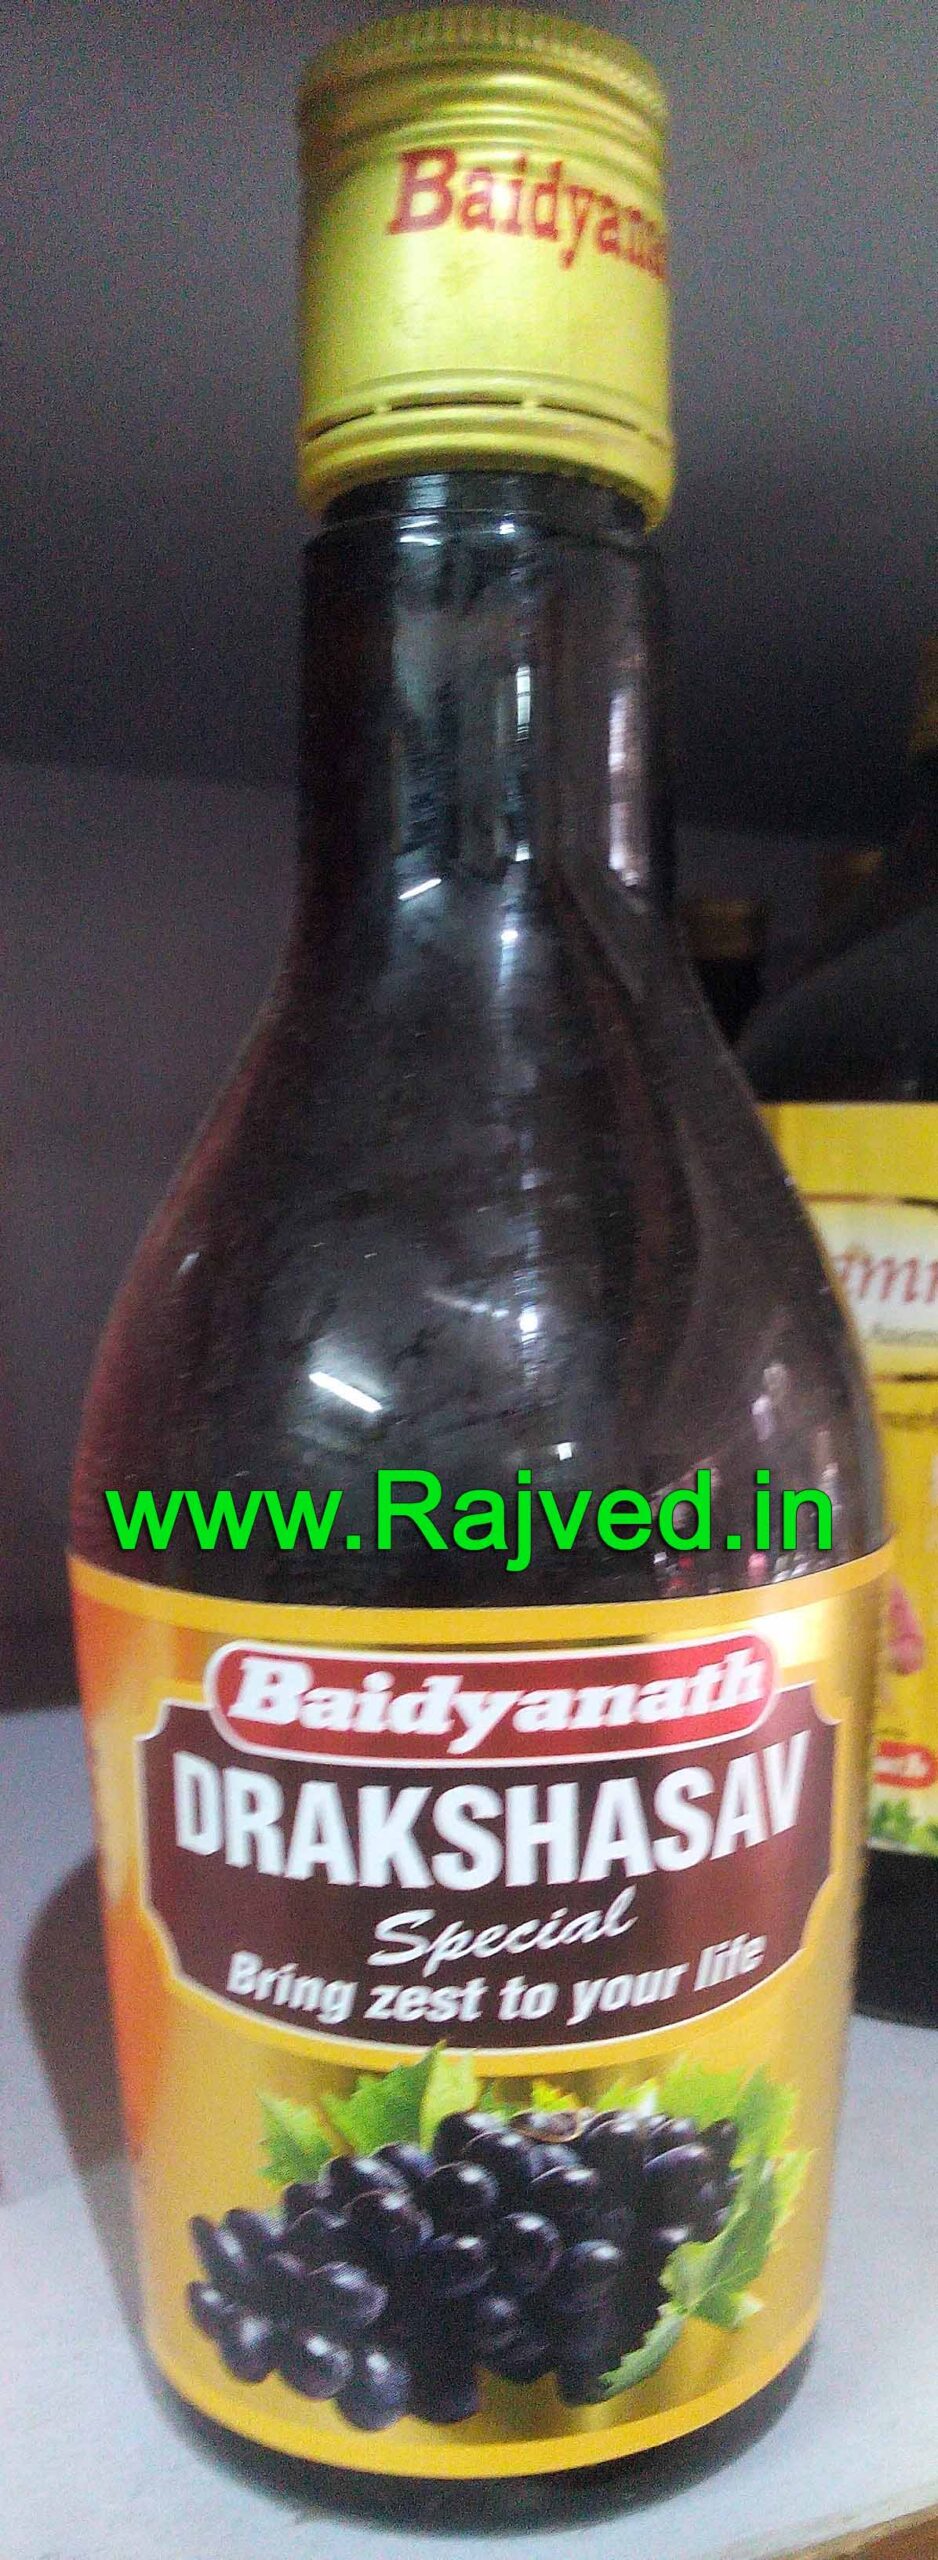 drakshasava special 650 ml shree baidyanath ayurved bhavan